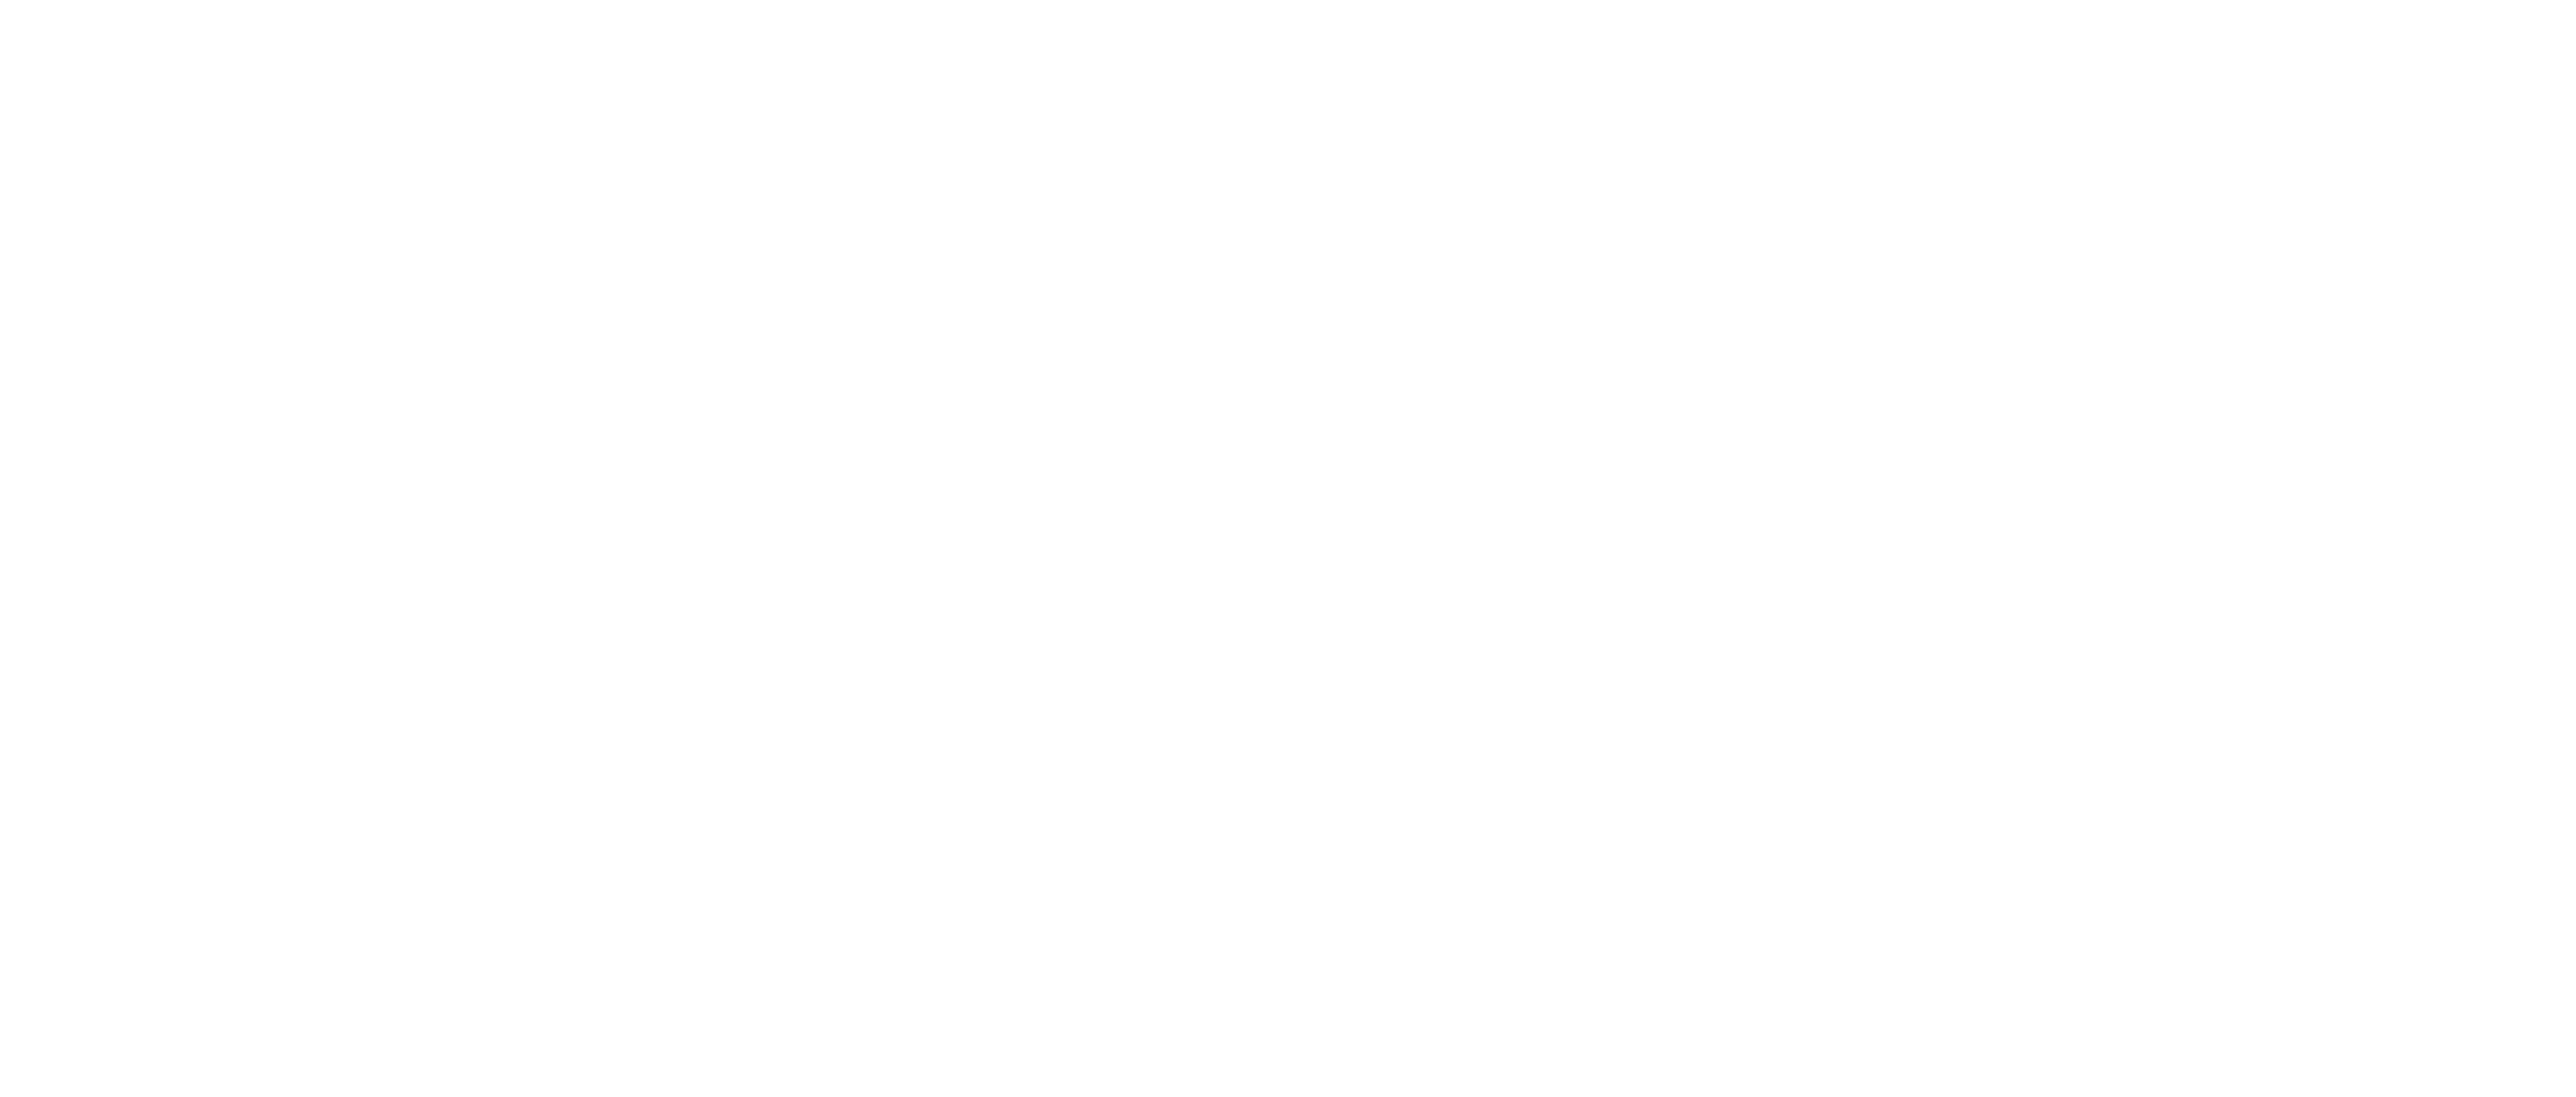 The Dorr